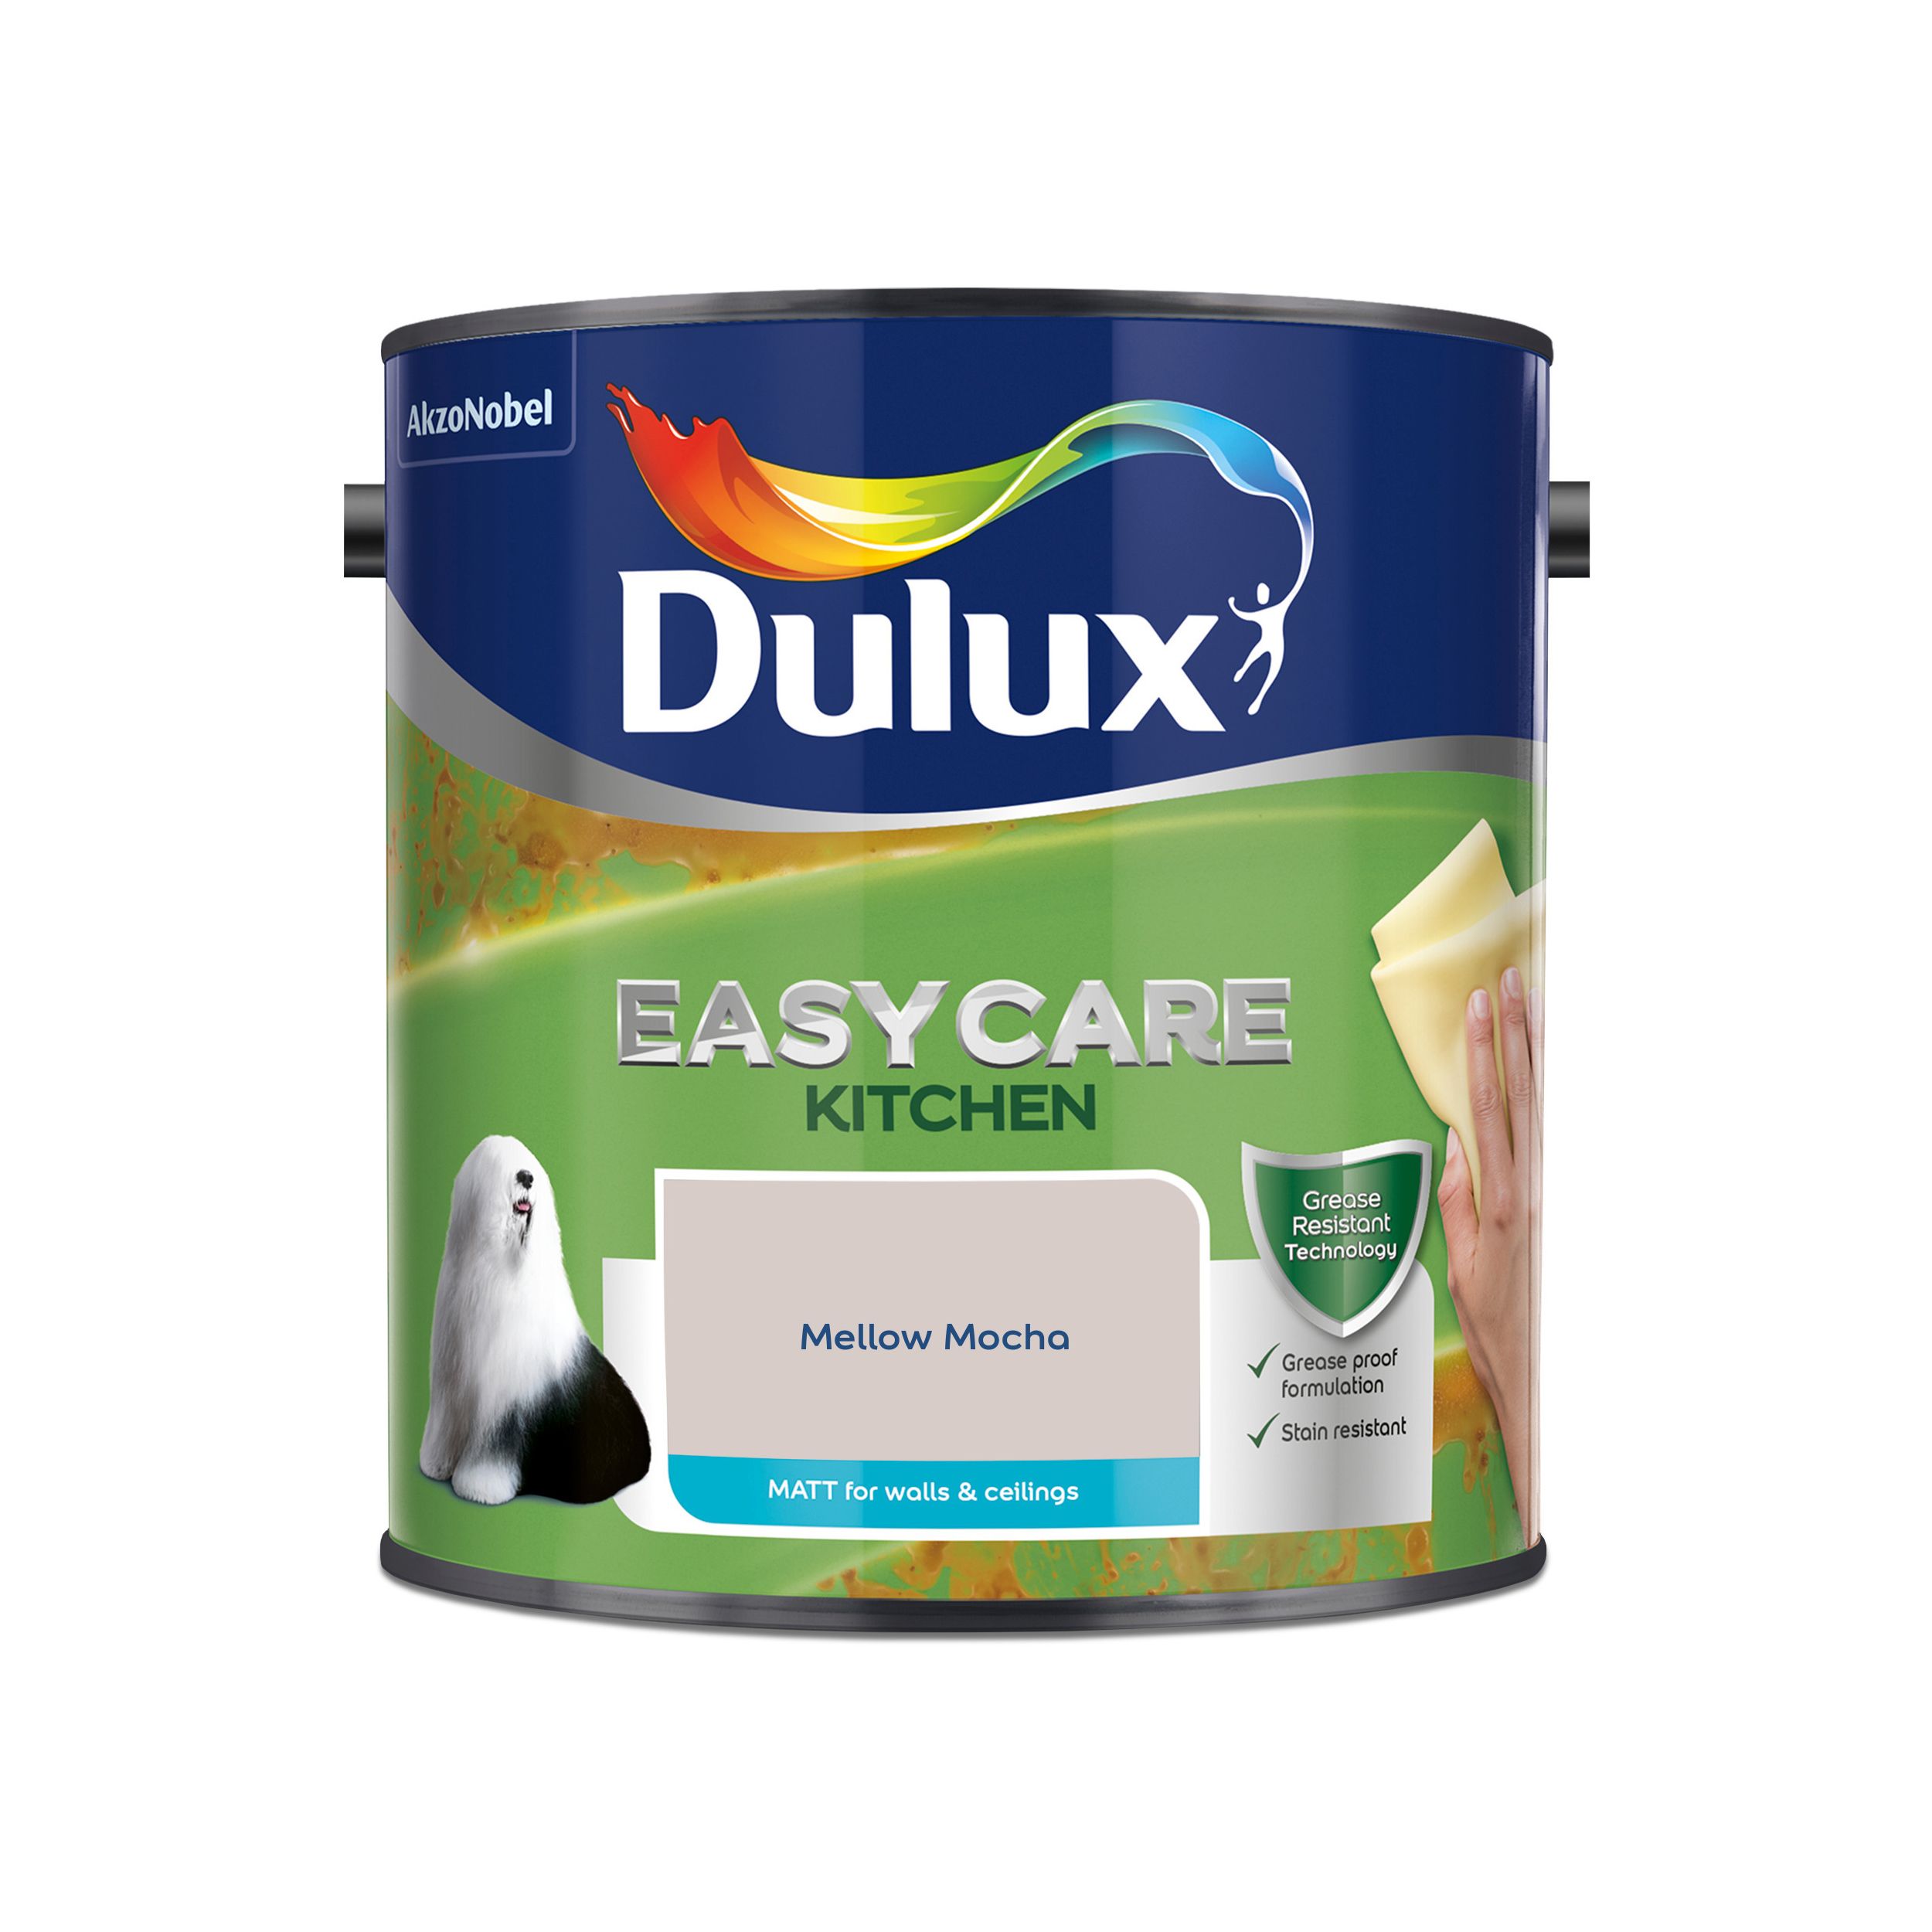 Dulux Easycare Kitchen Mellow Mocha Matt Emulsion paint, 2.5L